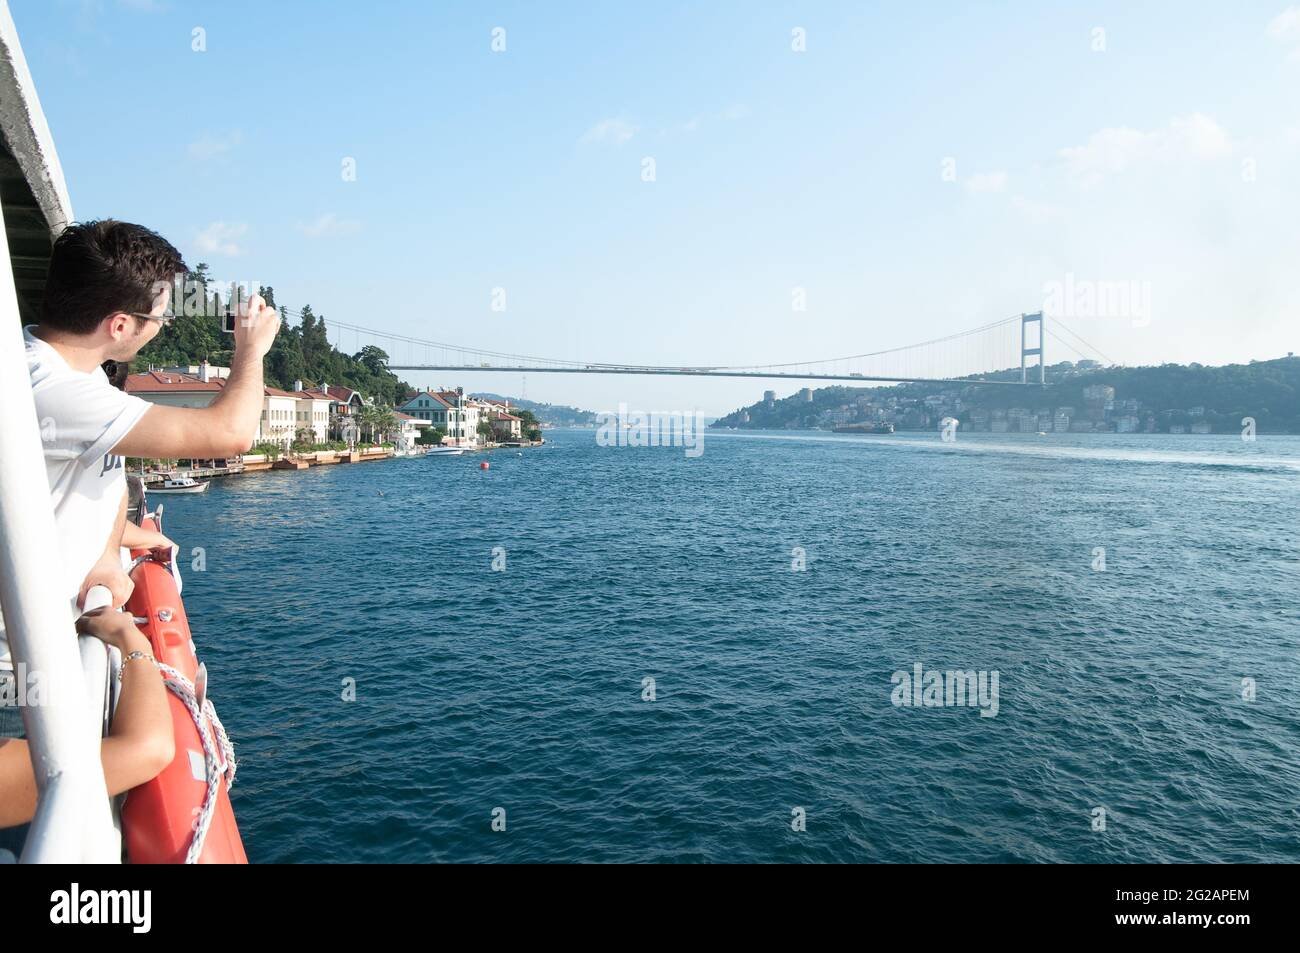 Istanbul, Turquie - 17 juillet 2010 : panoramique d'un touriste qui prend une photo du détroit de Bosporus et du pont de Bogazici depuis un ferry Banque D'Images